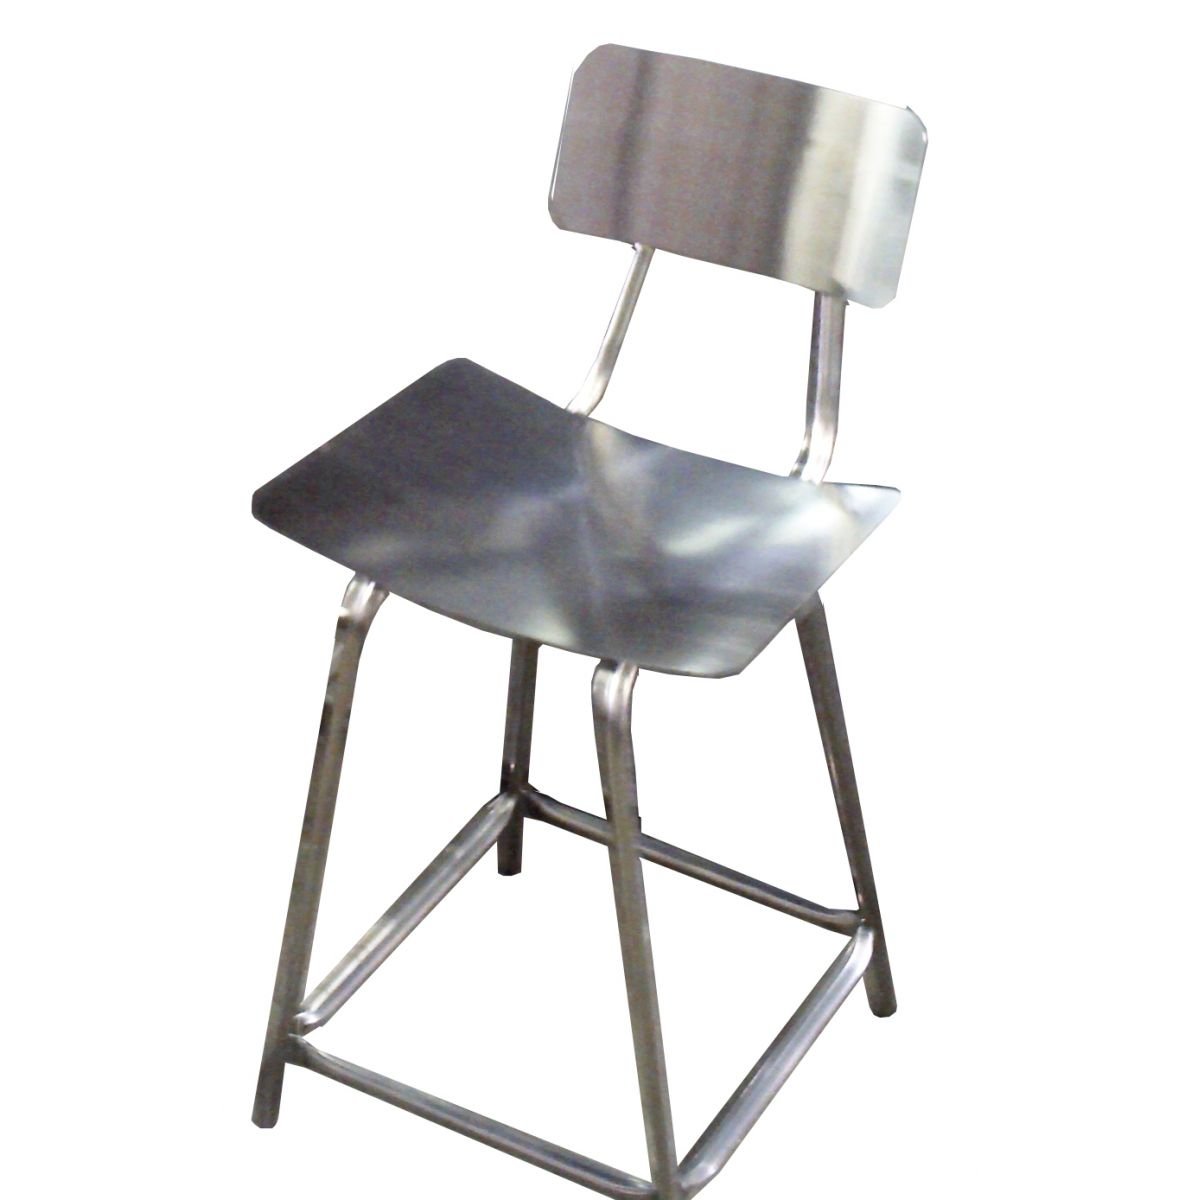 Cadeira fixa com encosto em aço inox - Altura total 68cm - 1